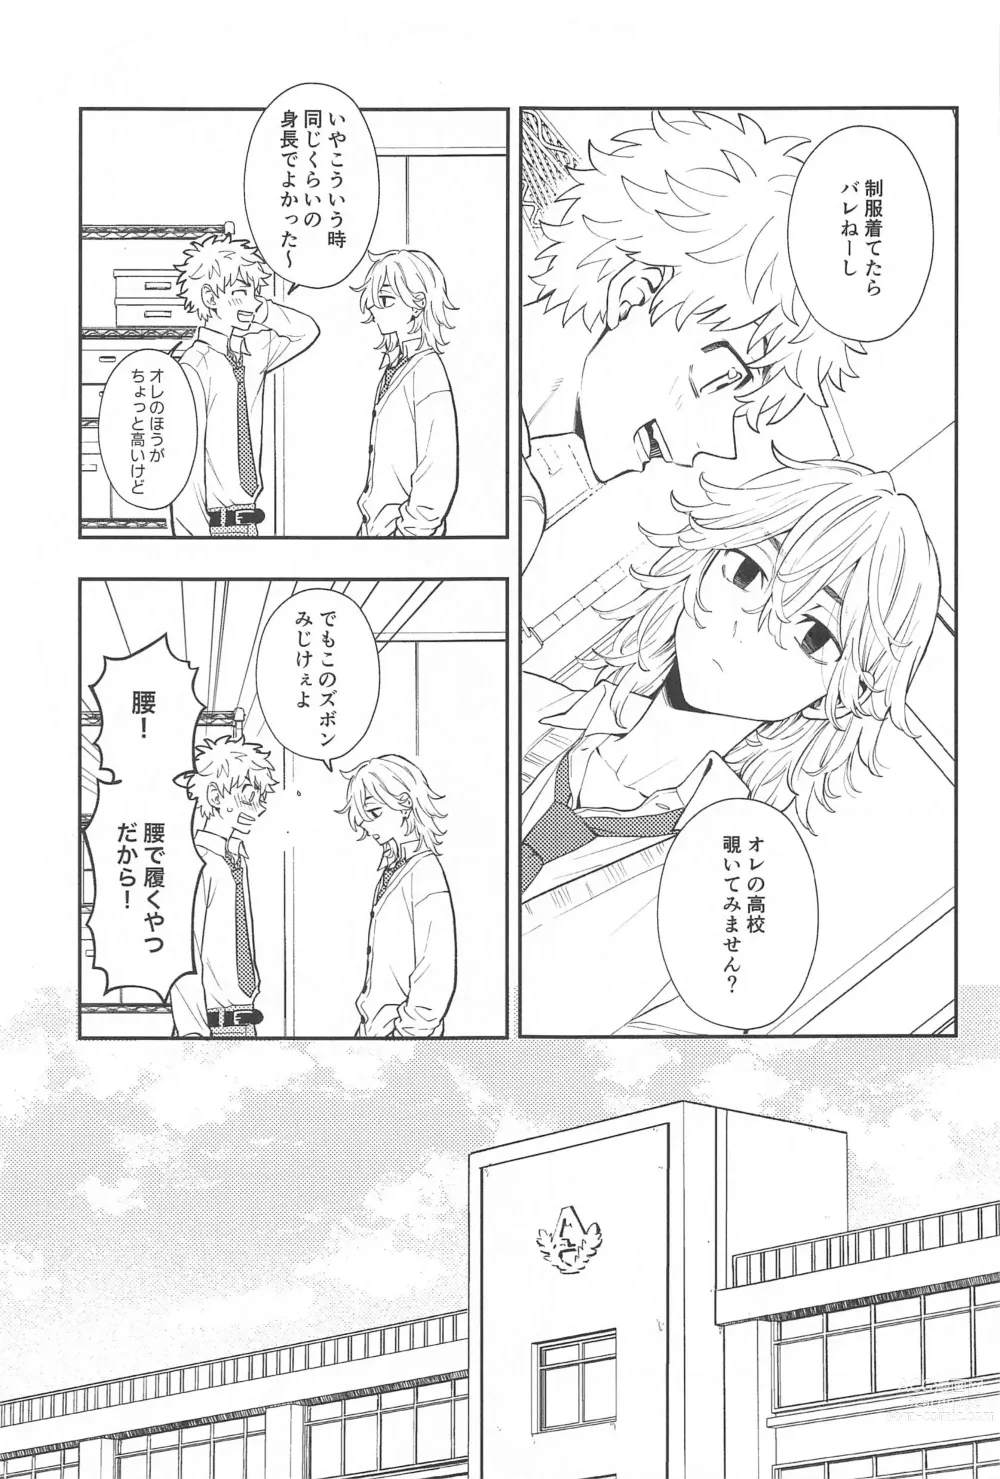 Page 6 of doujinshi Kyou wa Osoroi de!